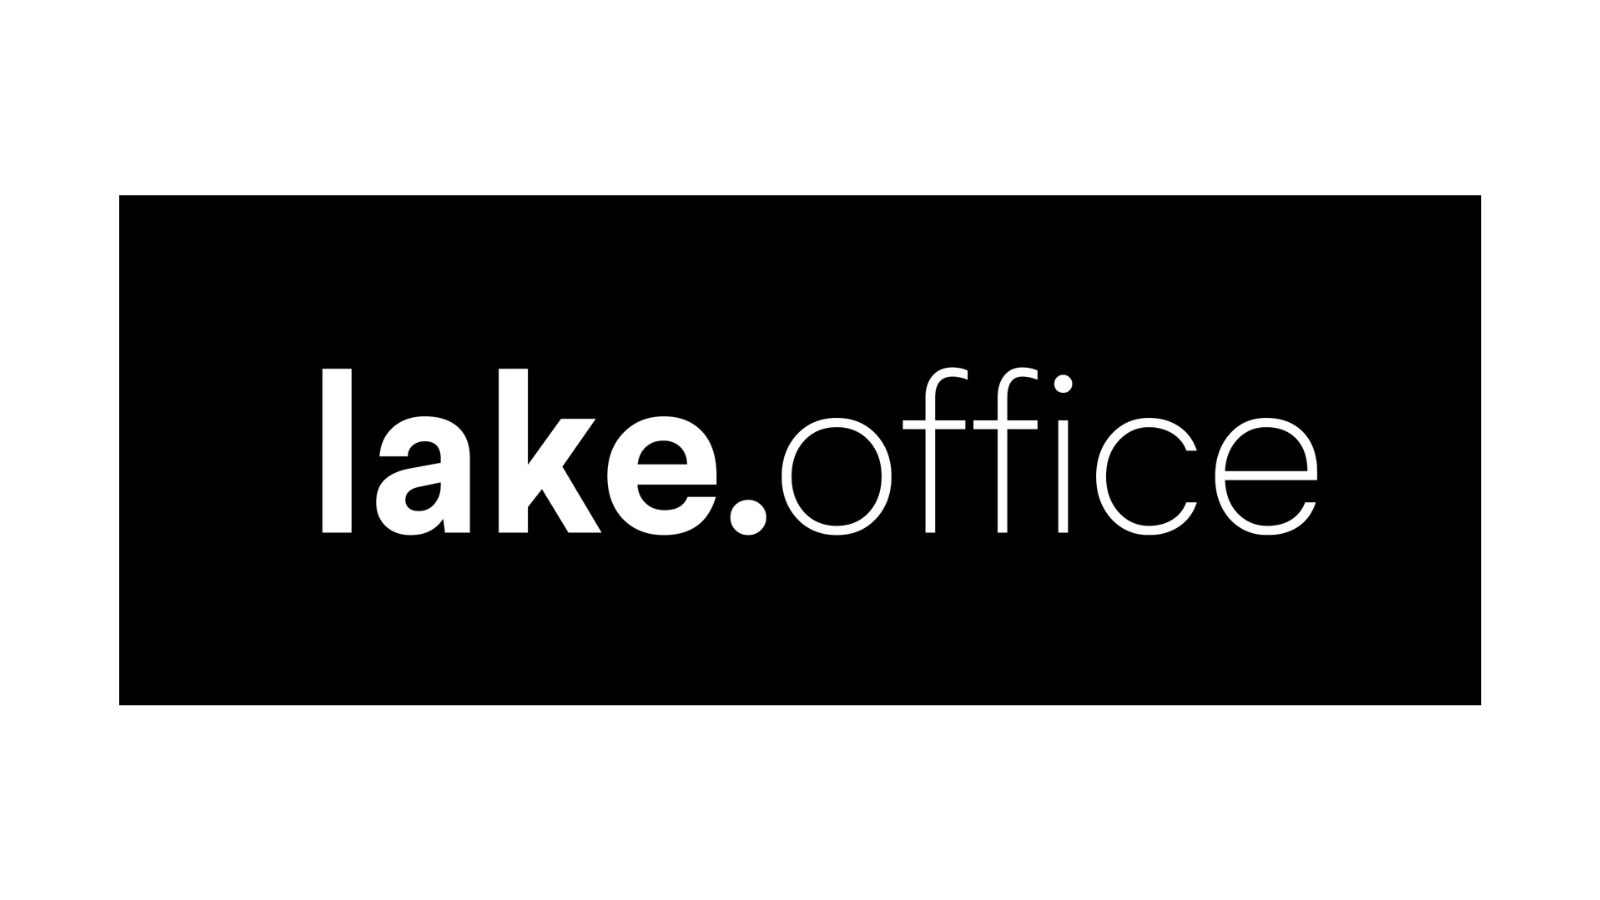 lake.office